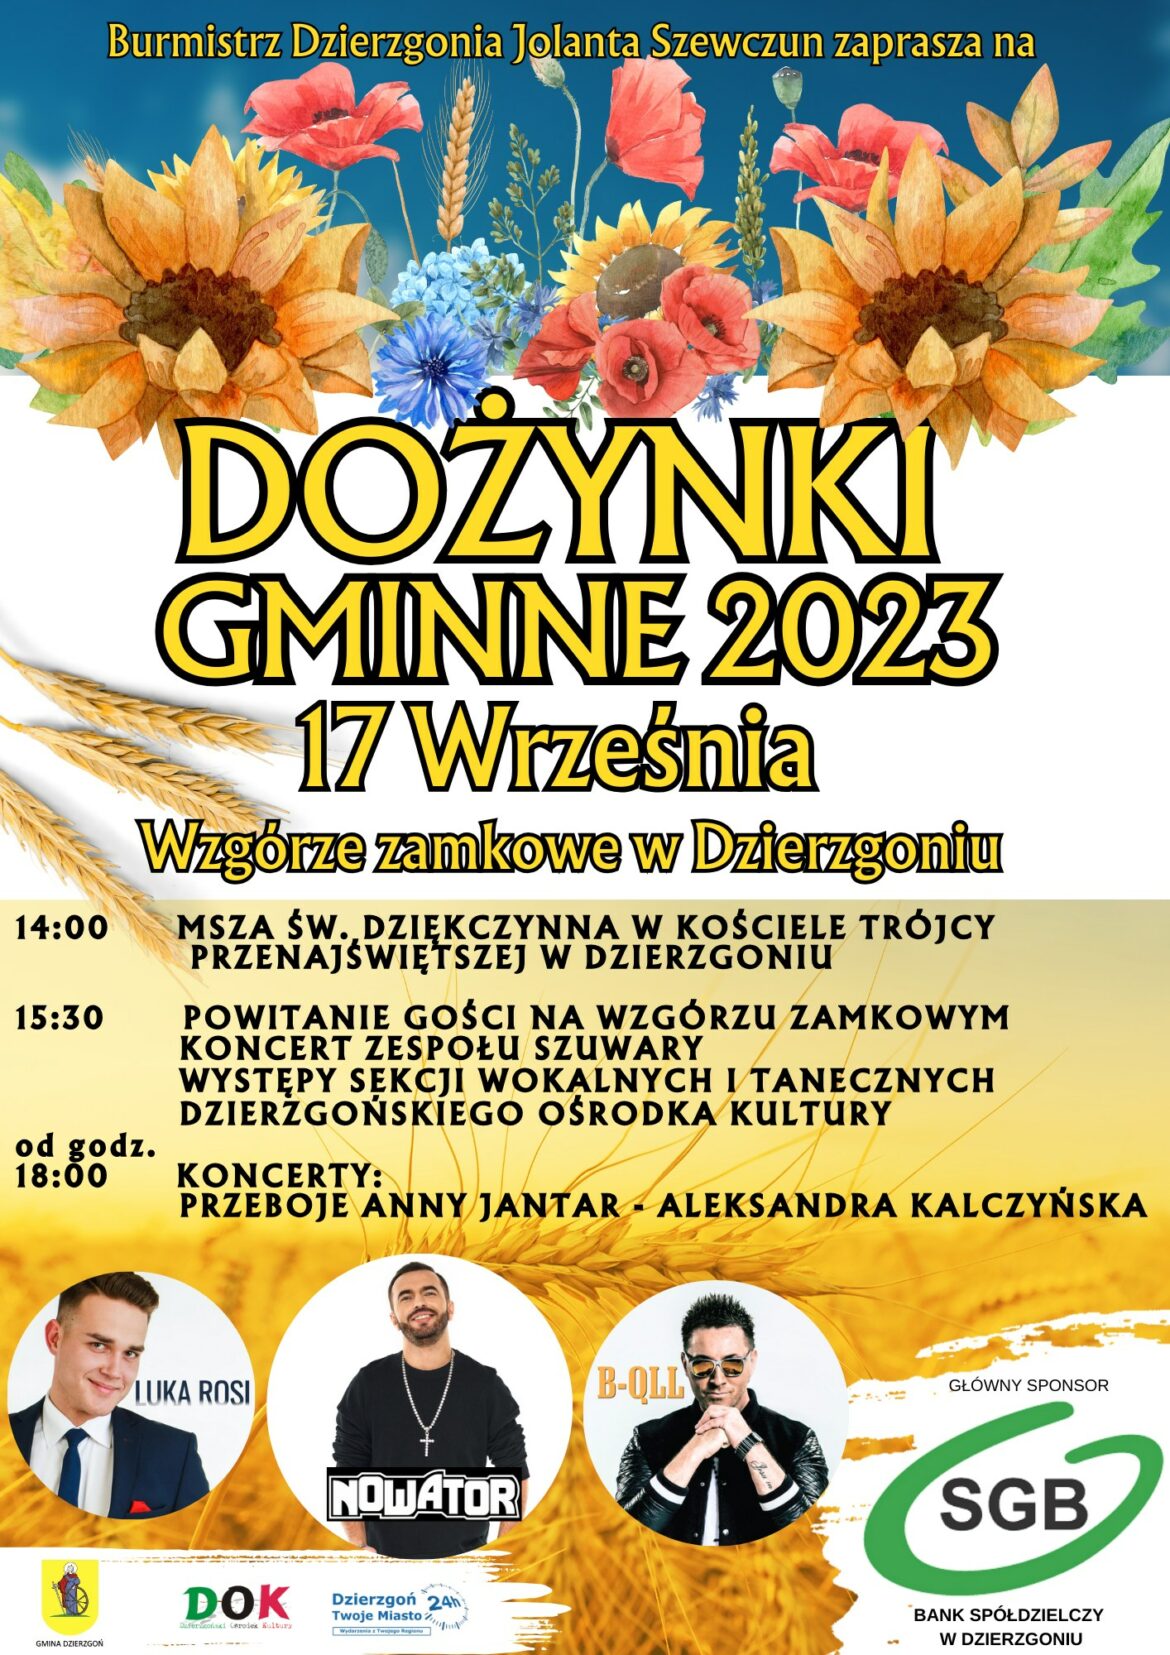 Dożynki Gminne 2023 w tym roku odbędą się w Dzierzgoniu [PLAN IMPREZY]